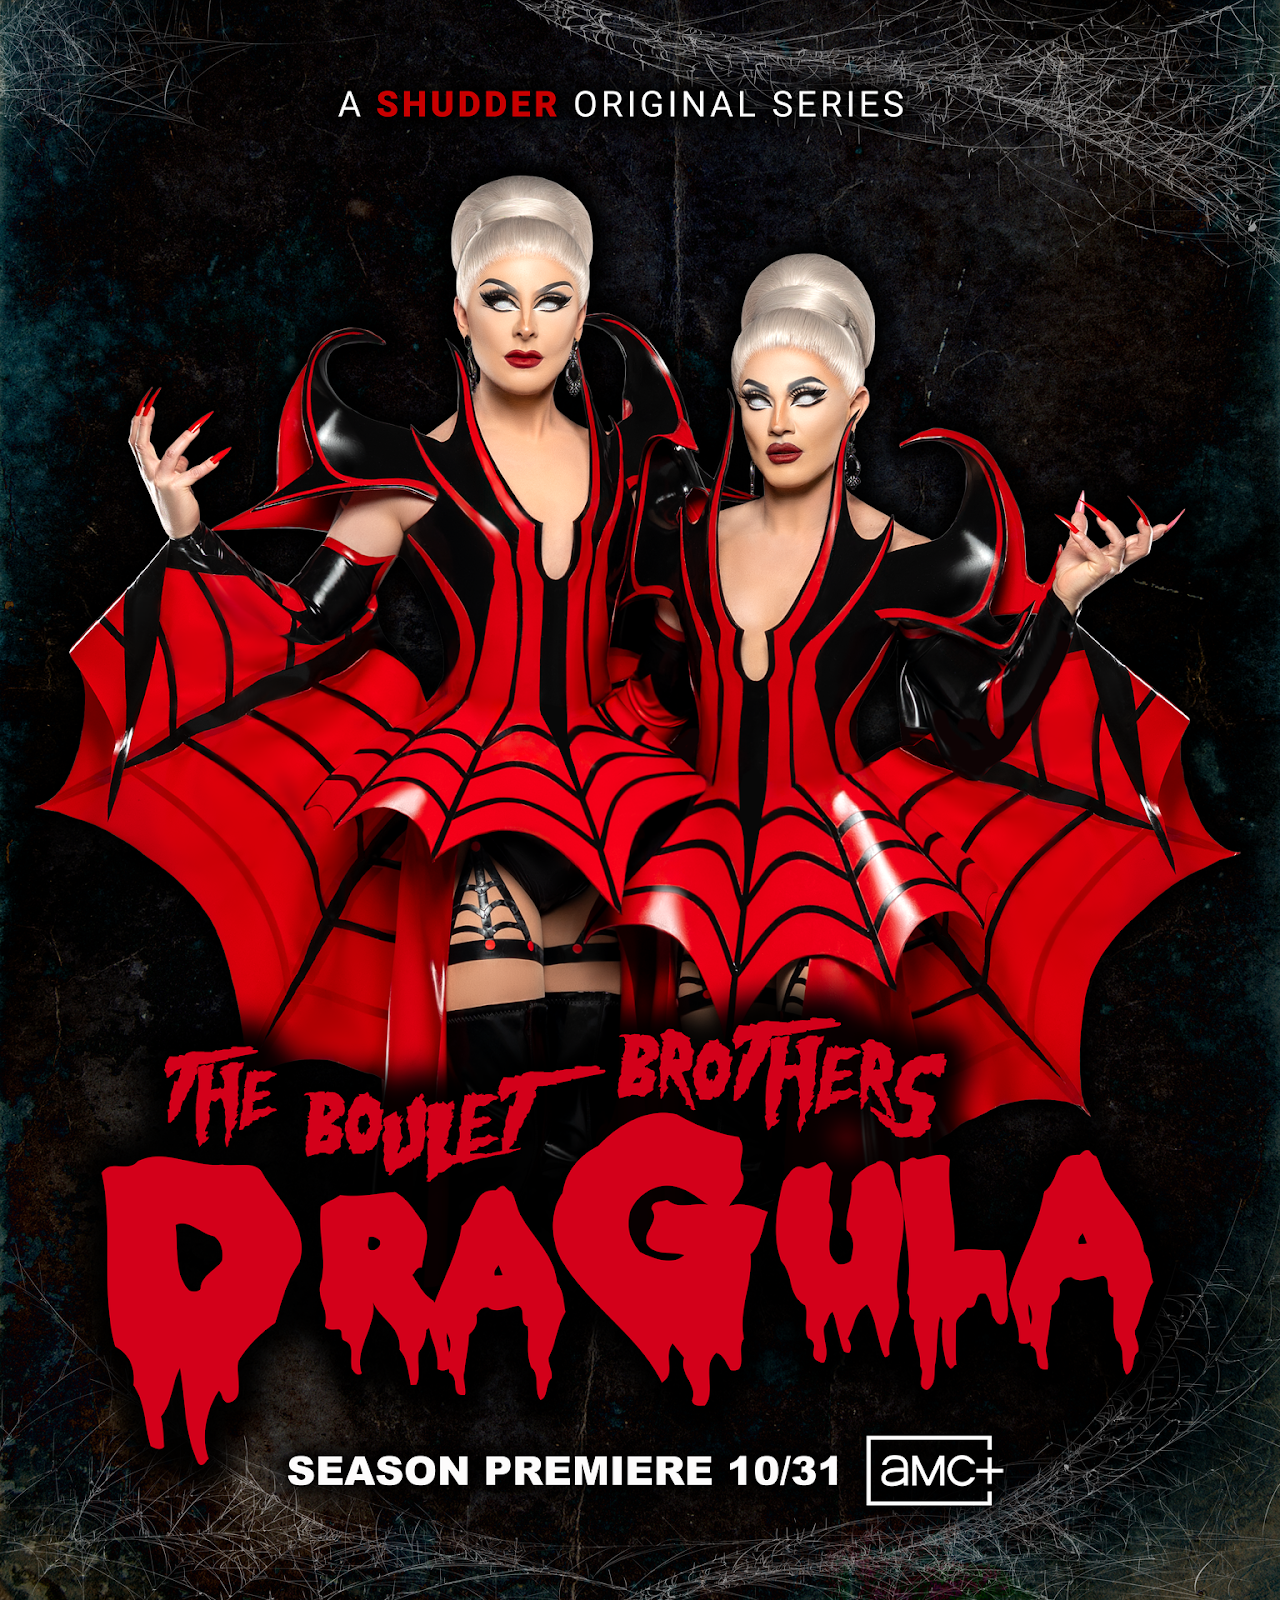 pDh7MTYCZbgtRSyXBfeAHZAcDNUbNLKaqllt lZmvPkfS6R4dwoaqtFqa8UIBX16eghYB0fkBFrUc5HRpjNV8fTOYYHlyyxxmf0i6YUznnRP4yDwuDJM2SNc9IkLDFQX3JlXkWGcM1LBrUknZj0oeRQ - 'The Boulet Brothers' Dragula' Season 5 Comes To Shudder This Halloween